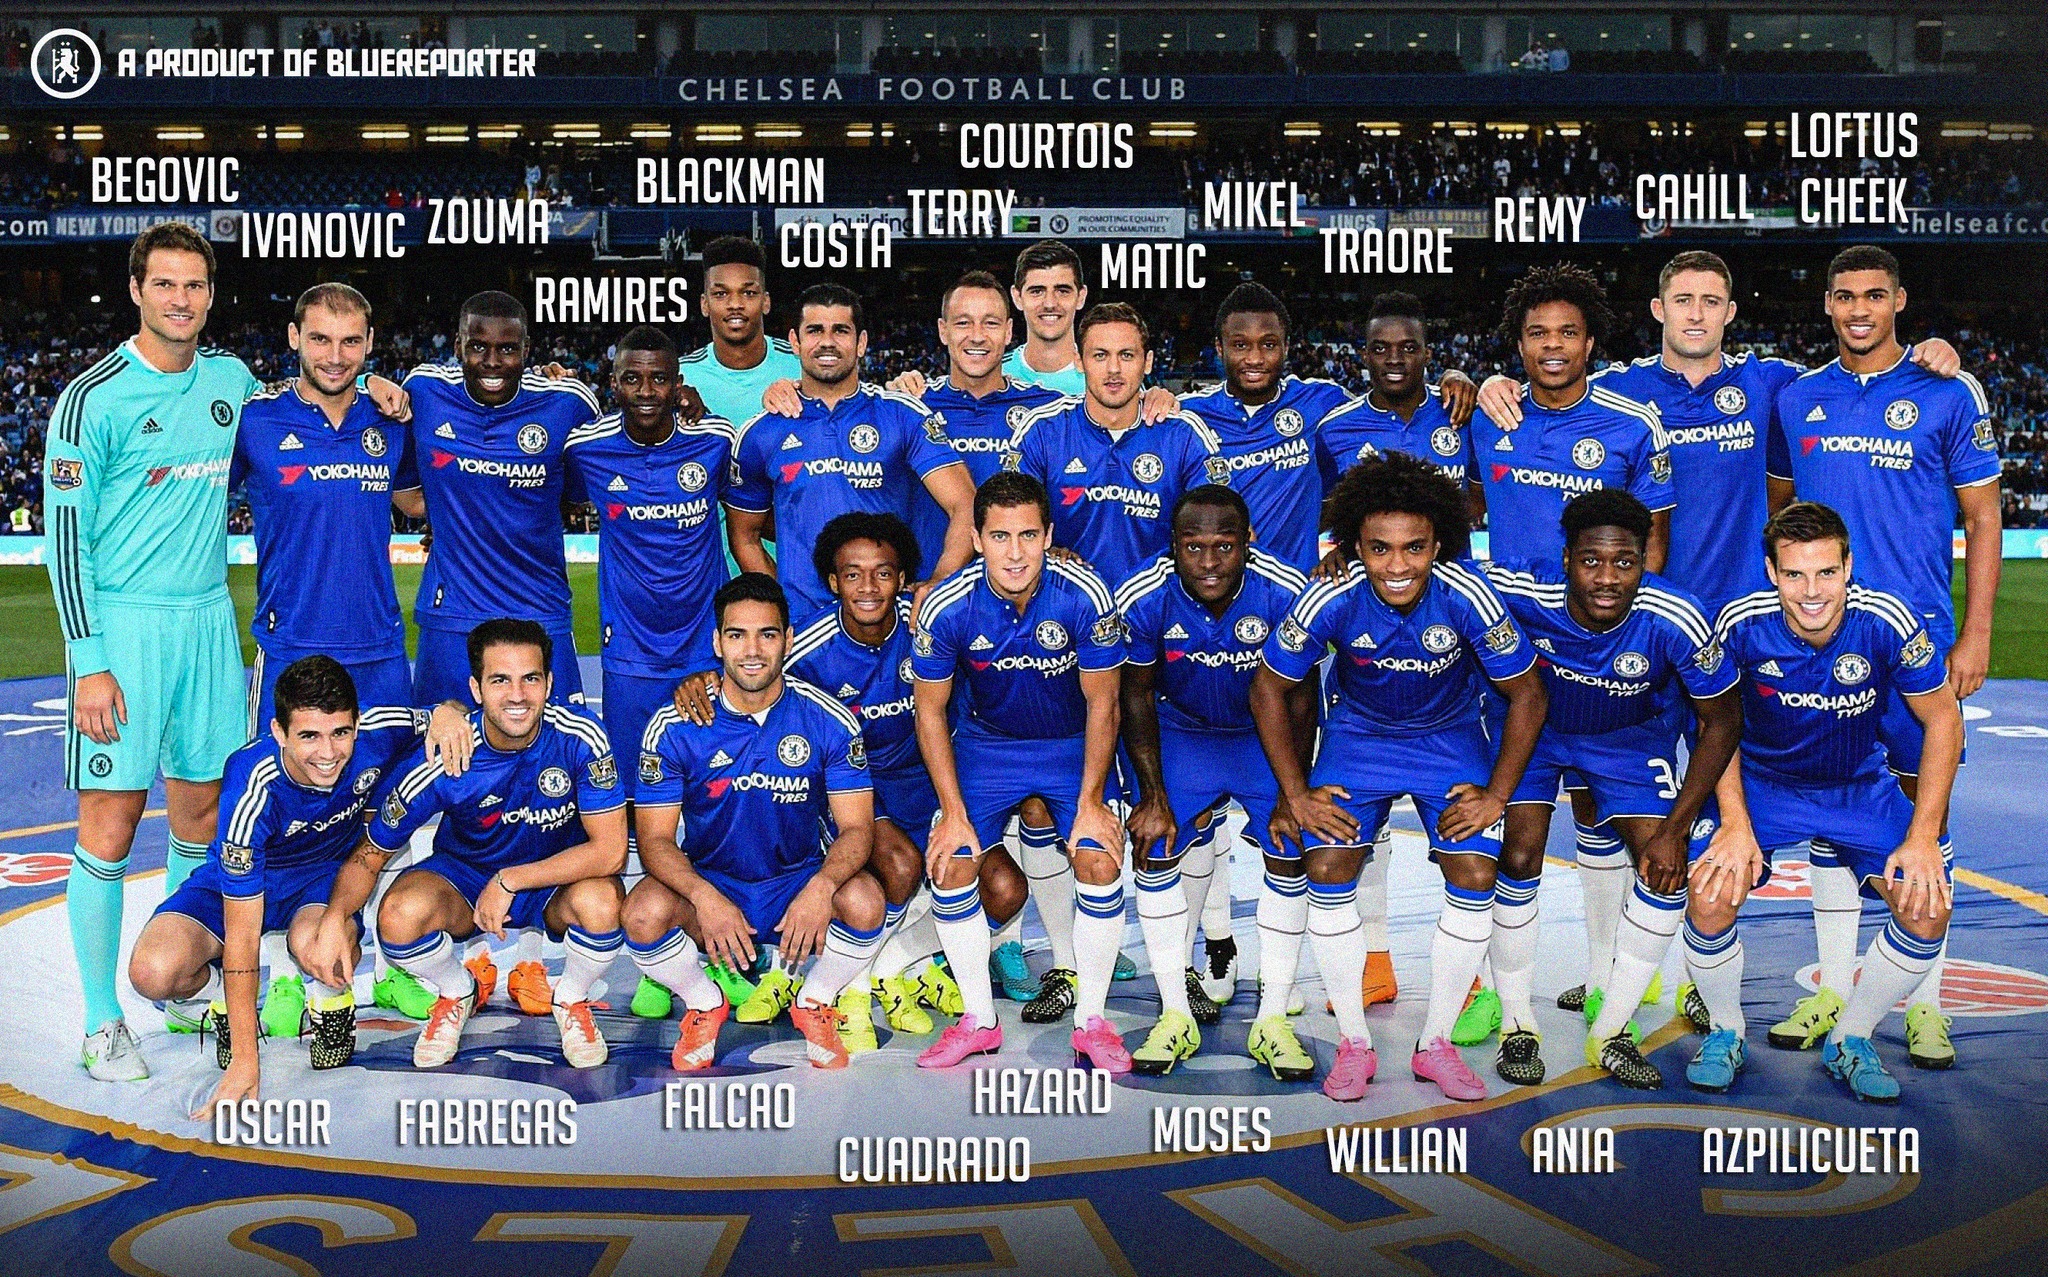 Đội hình Chelsea năm 2016